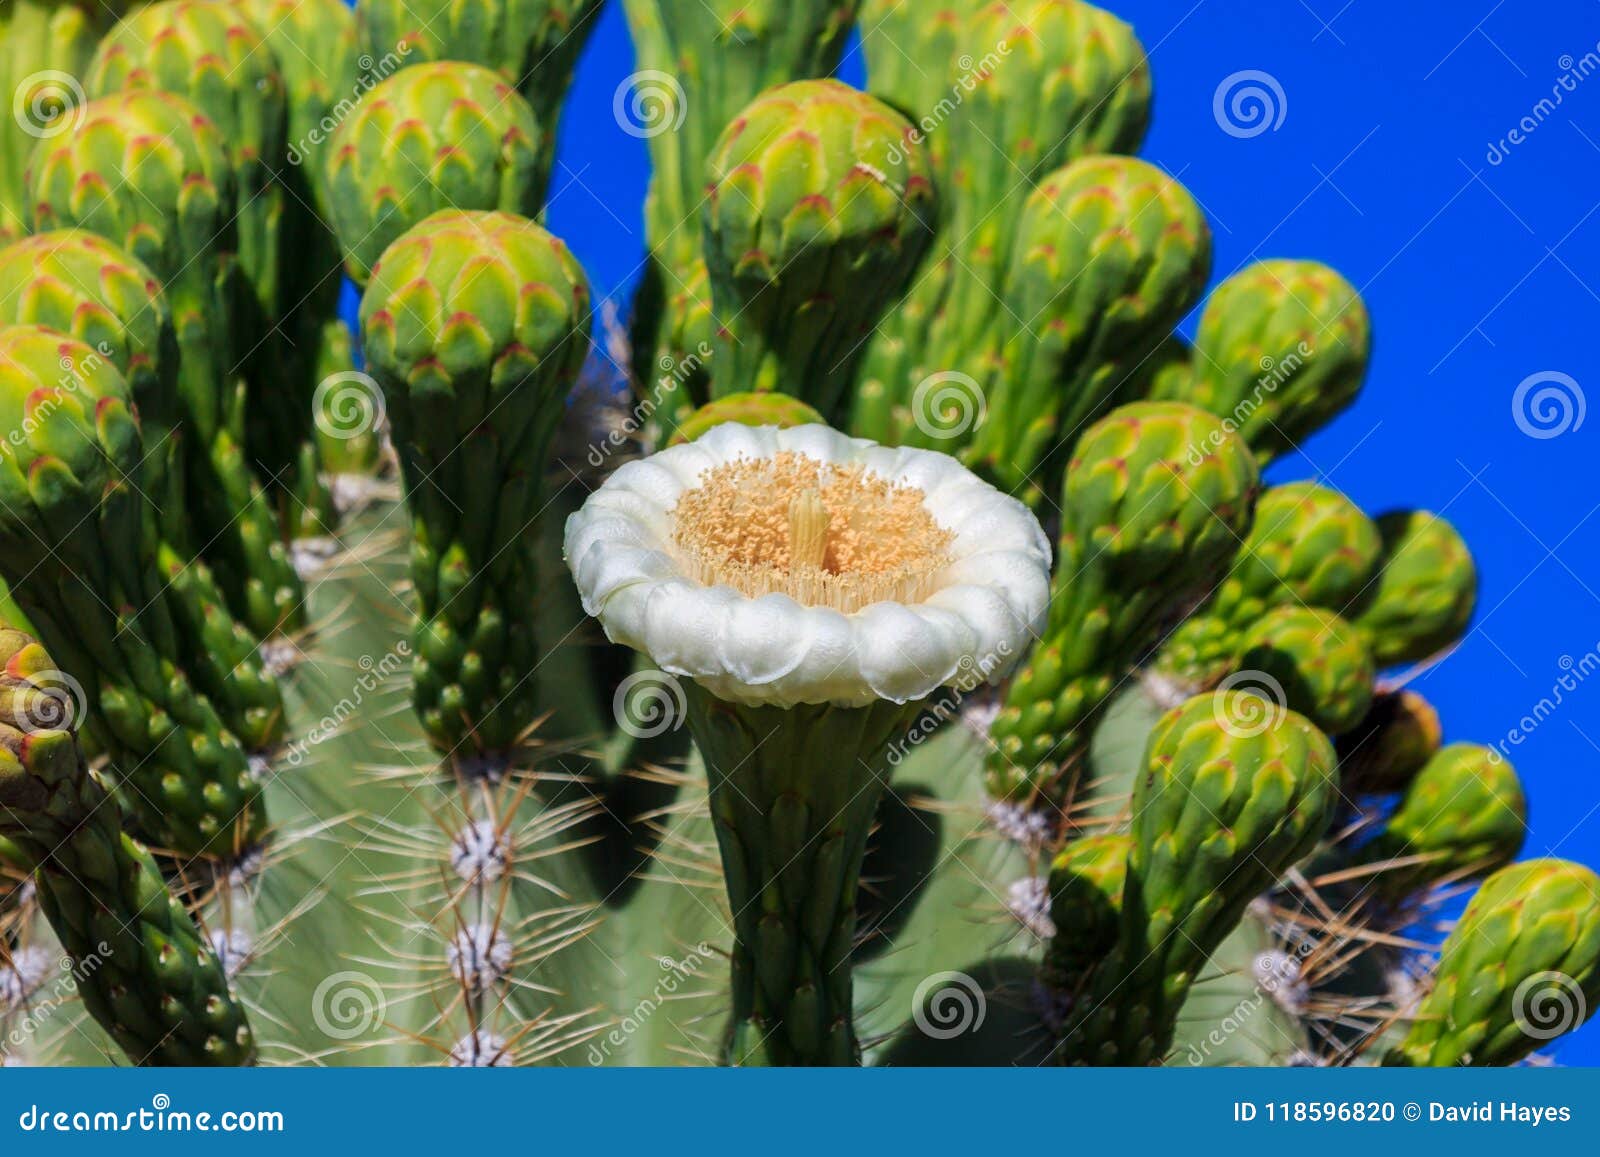 Escolha a Flor Branca No Cacto Do Saguaro Com Fileiras Dos Botões Fechados  Atrás Céu Azul No Fundo Foto de Stock - Imagem de planta, flor: 118596820